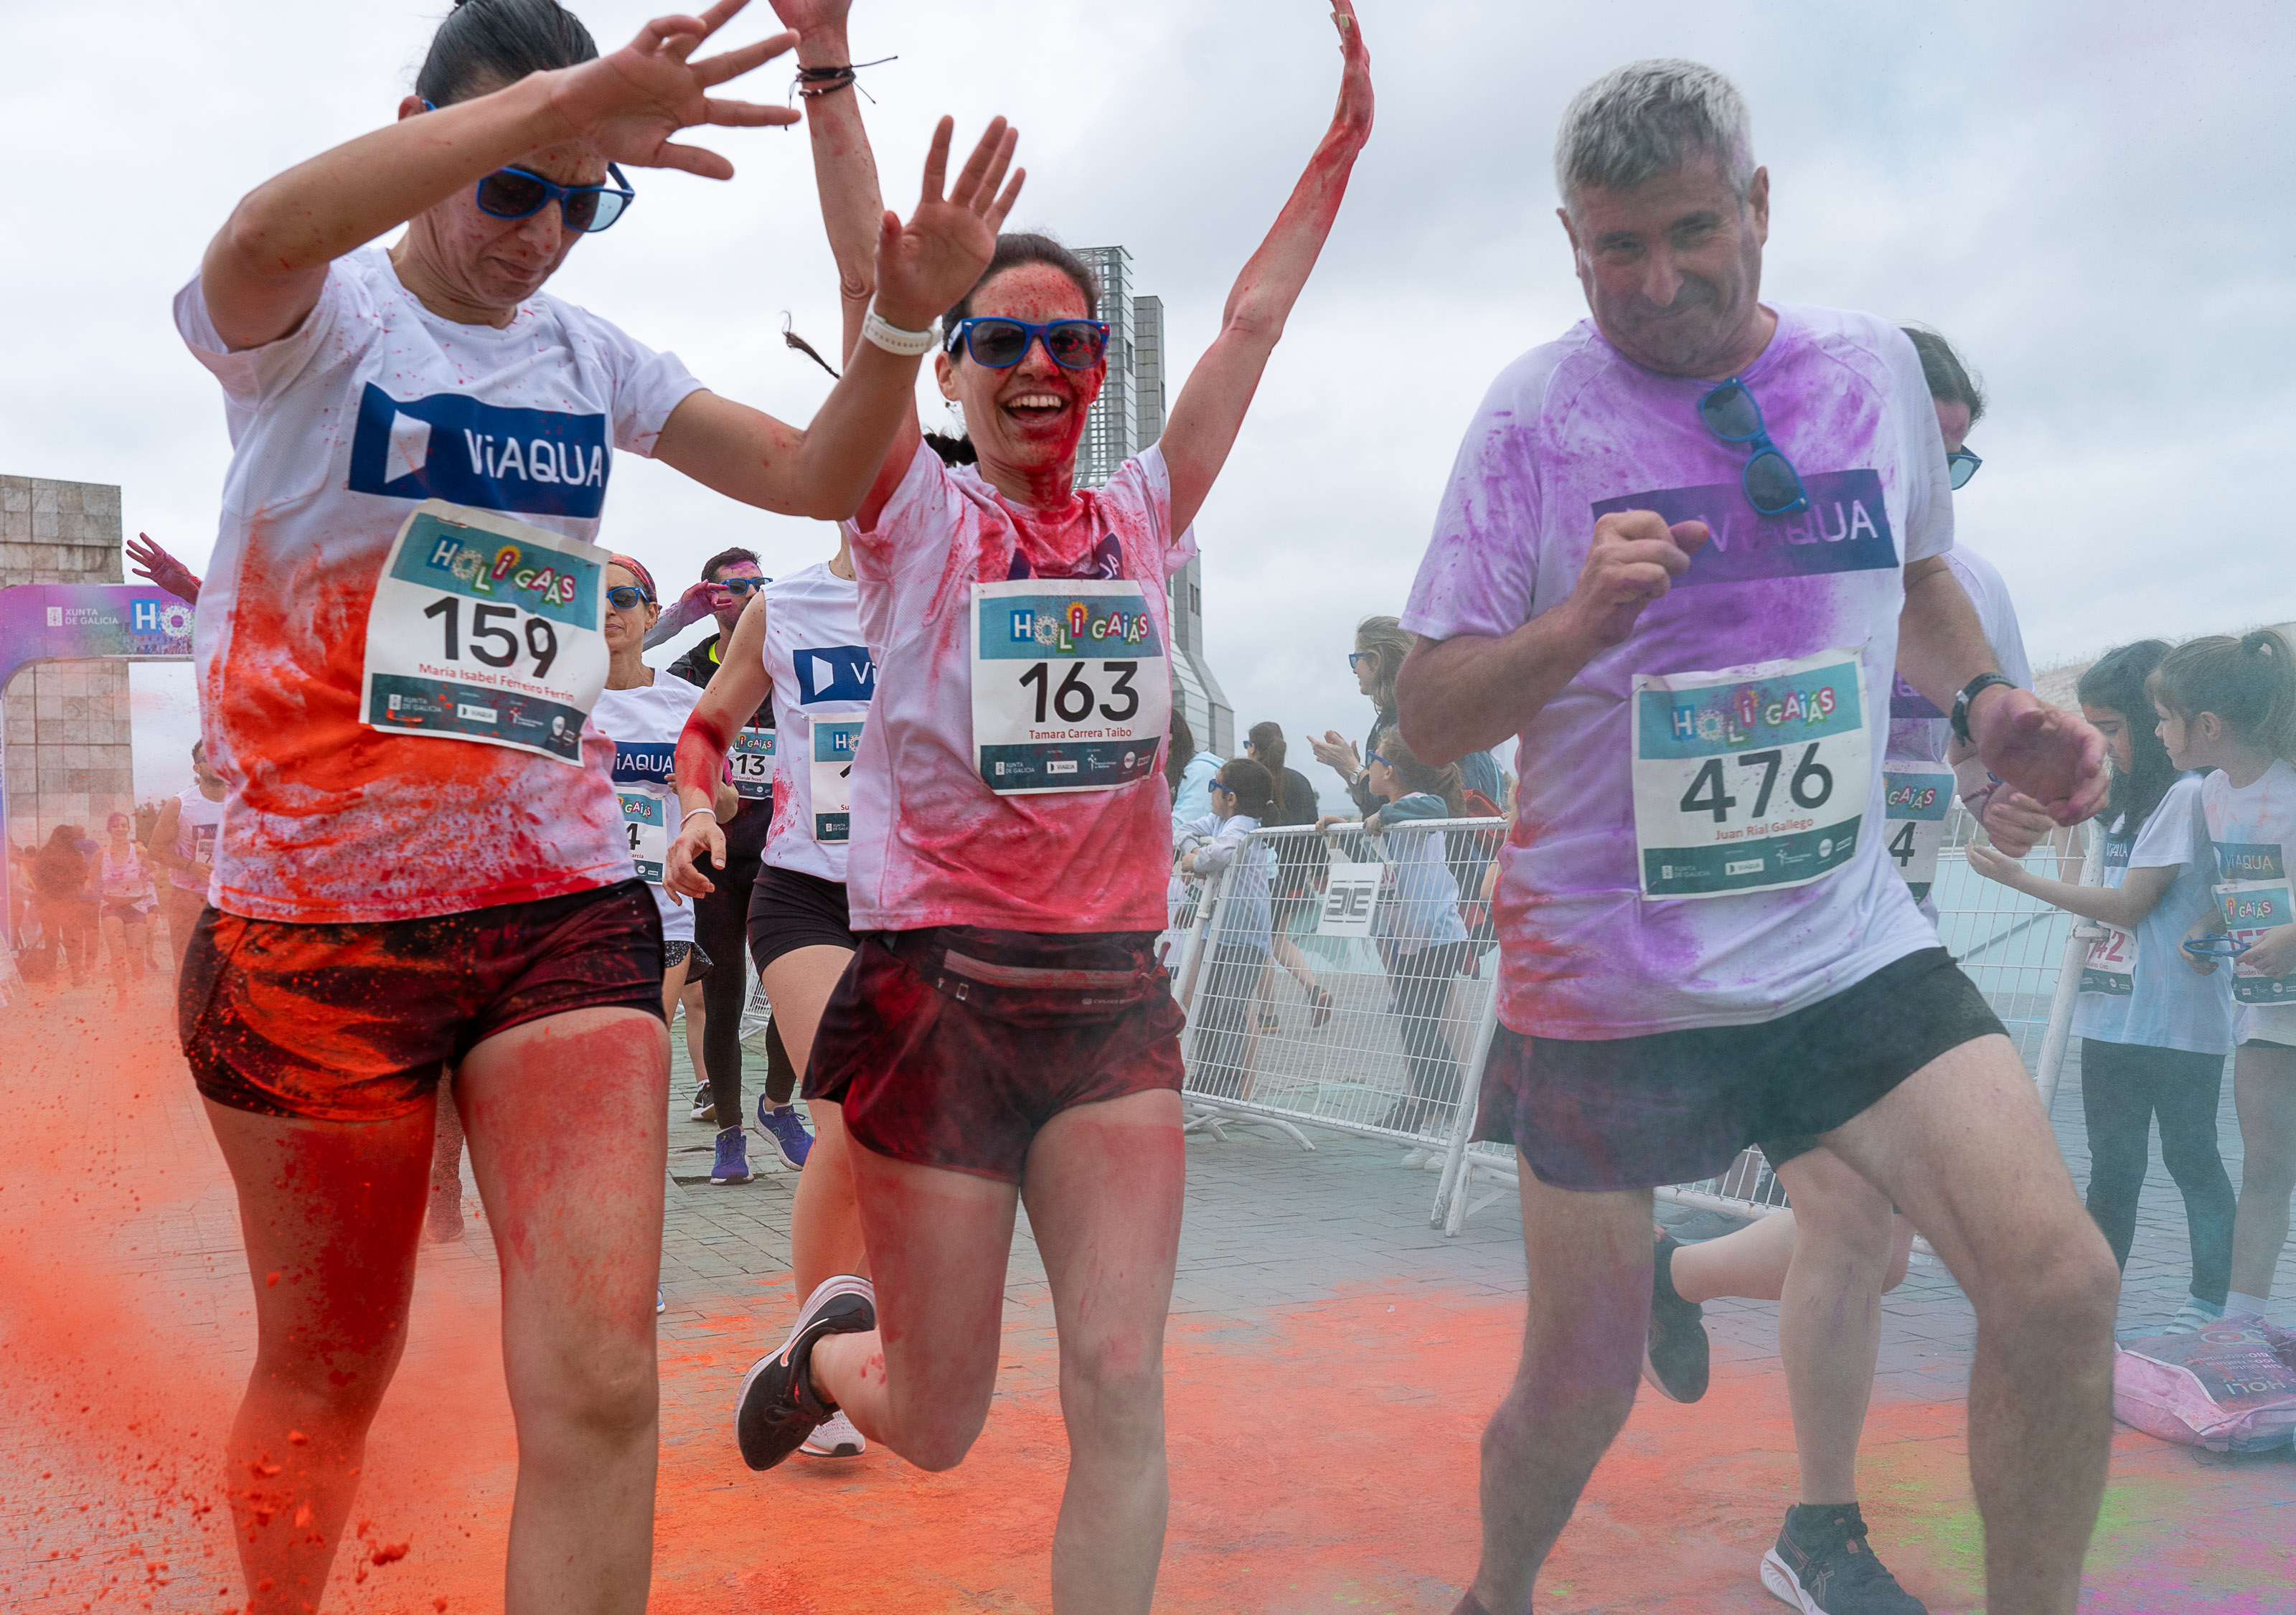 Image 1 of article Centos de persoas corren a Holi Gaiás para festexar a primavera baixo unha divertida poeira de cores